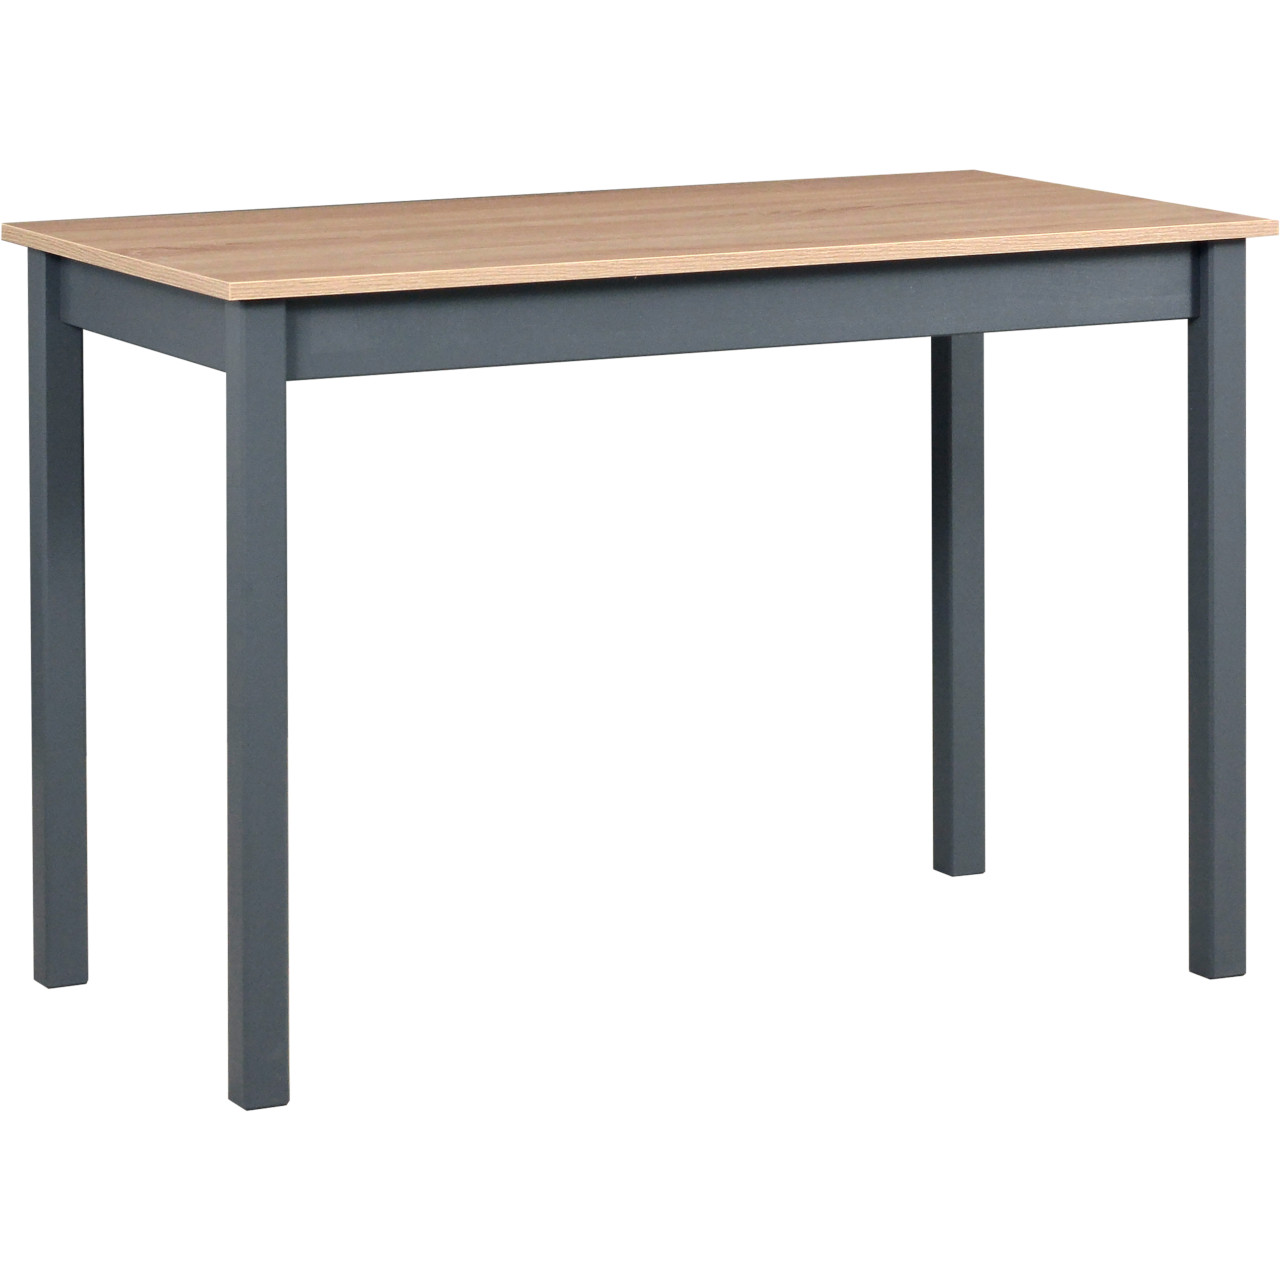 Table MAX 2 60x110 sonoma laminate / graphite